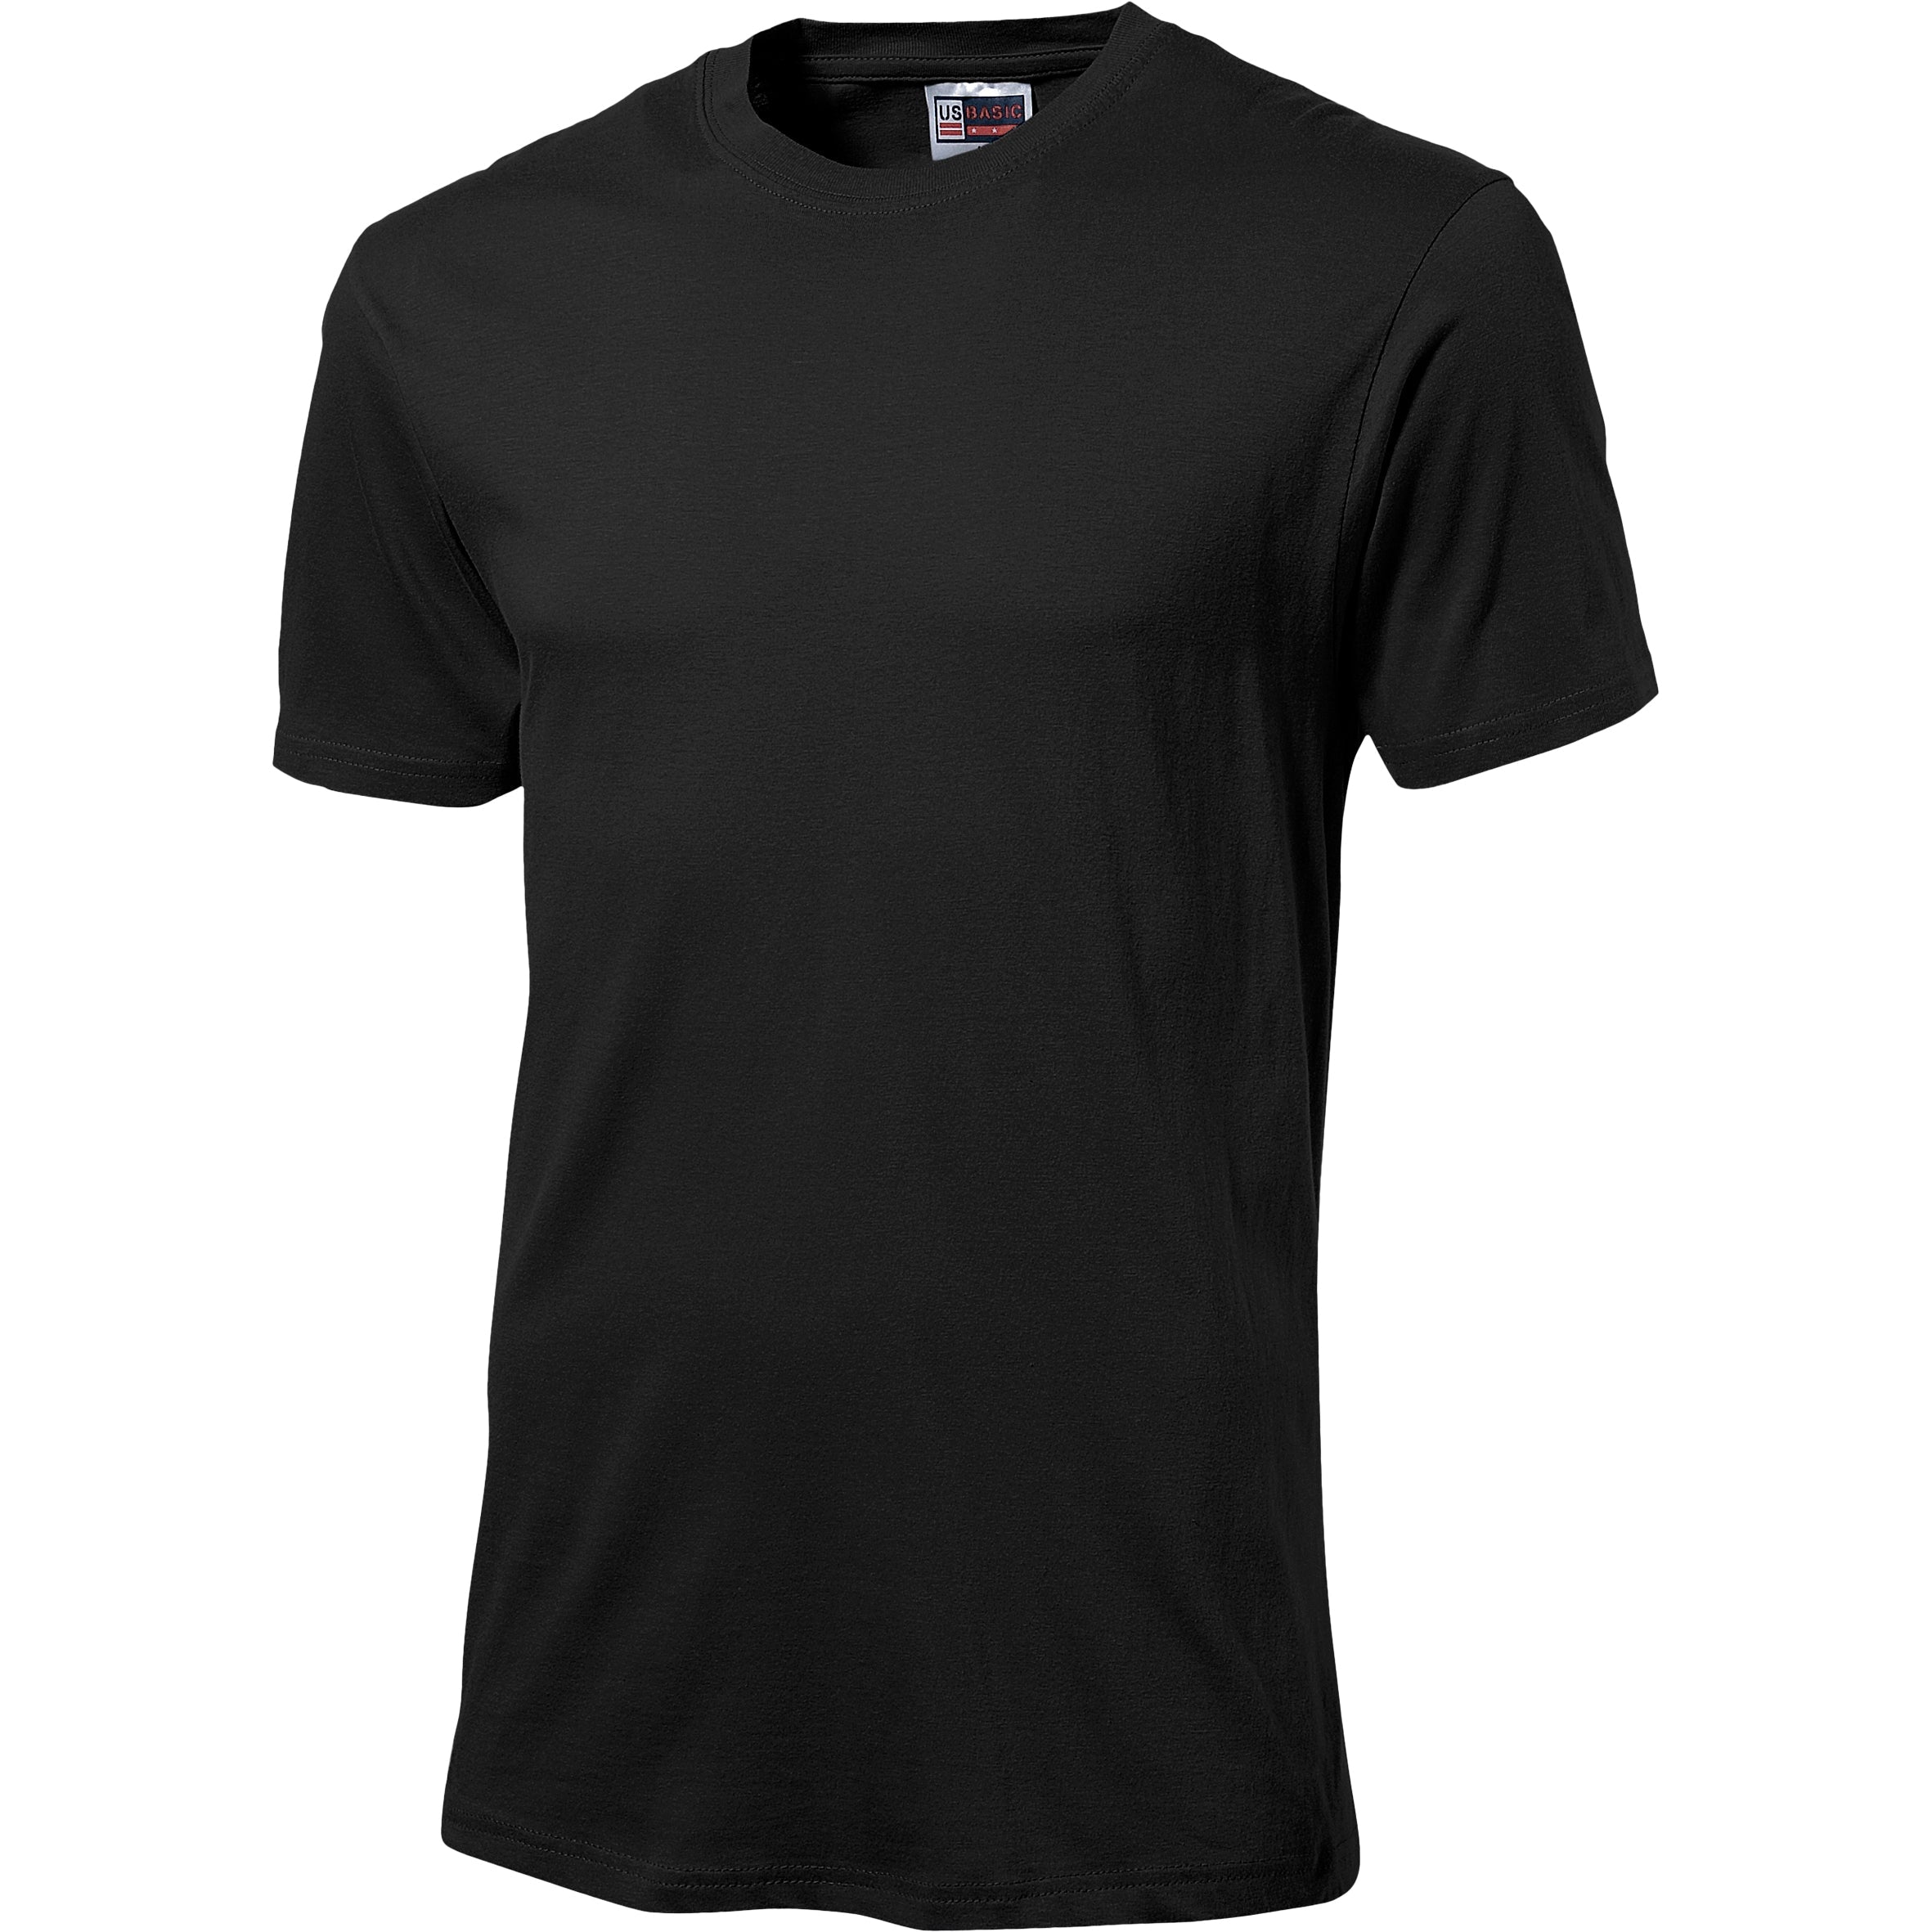 Unisex Super Club 135 T-Shirt L / Black / BL